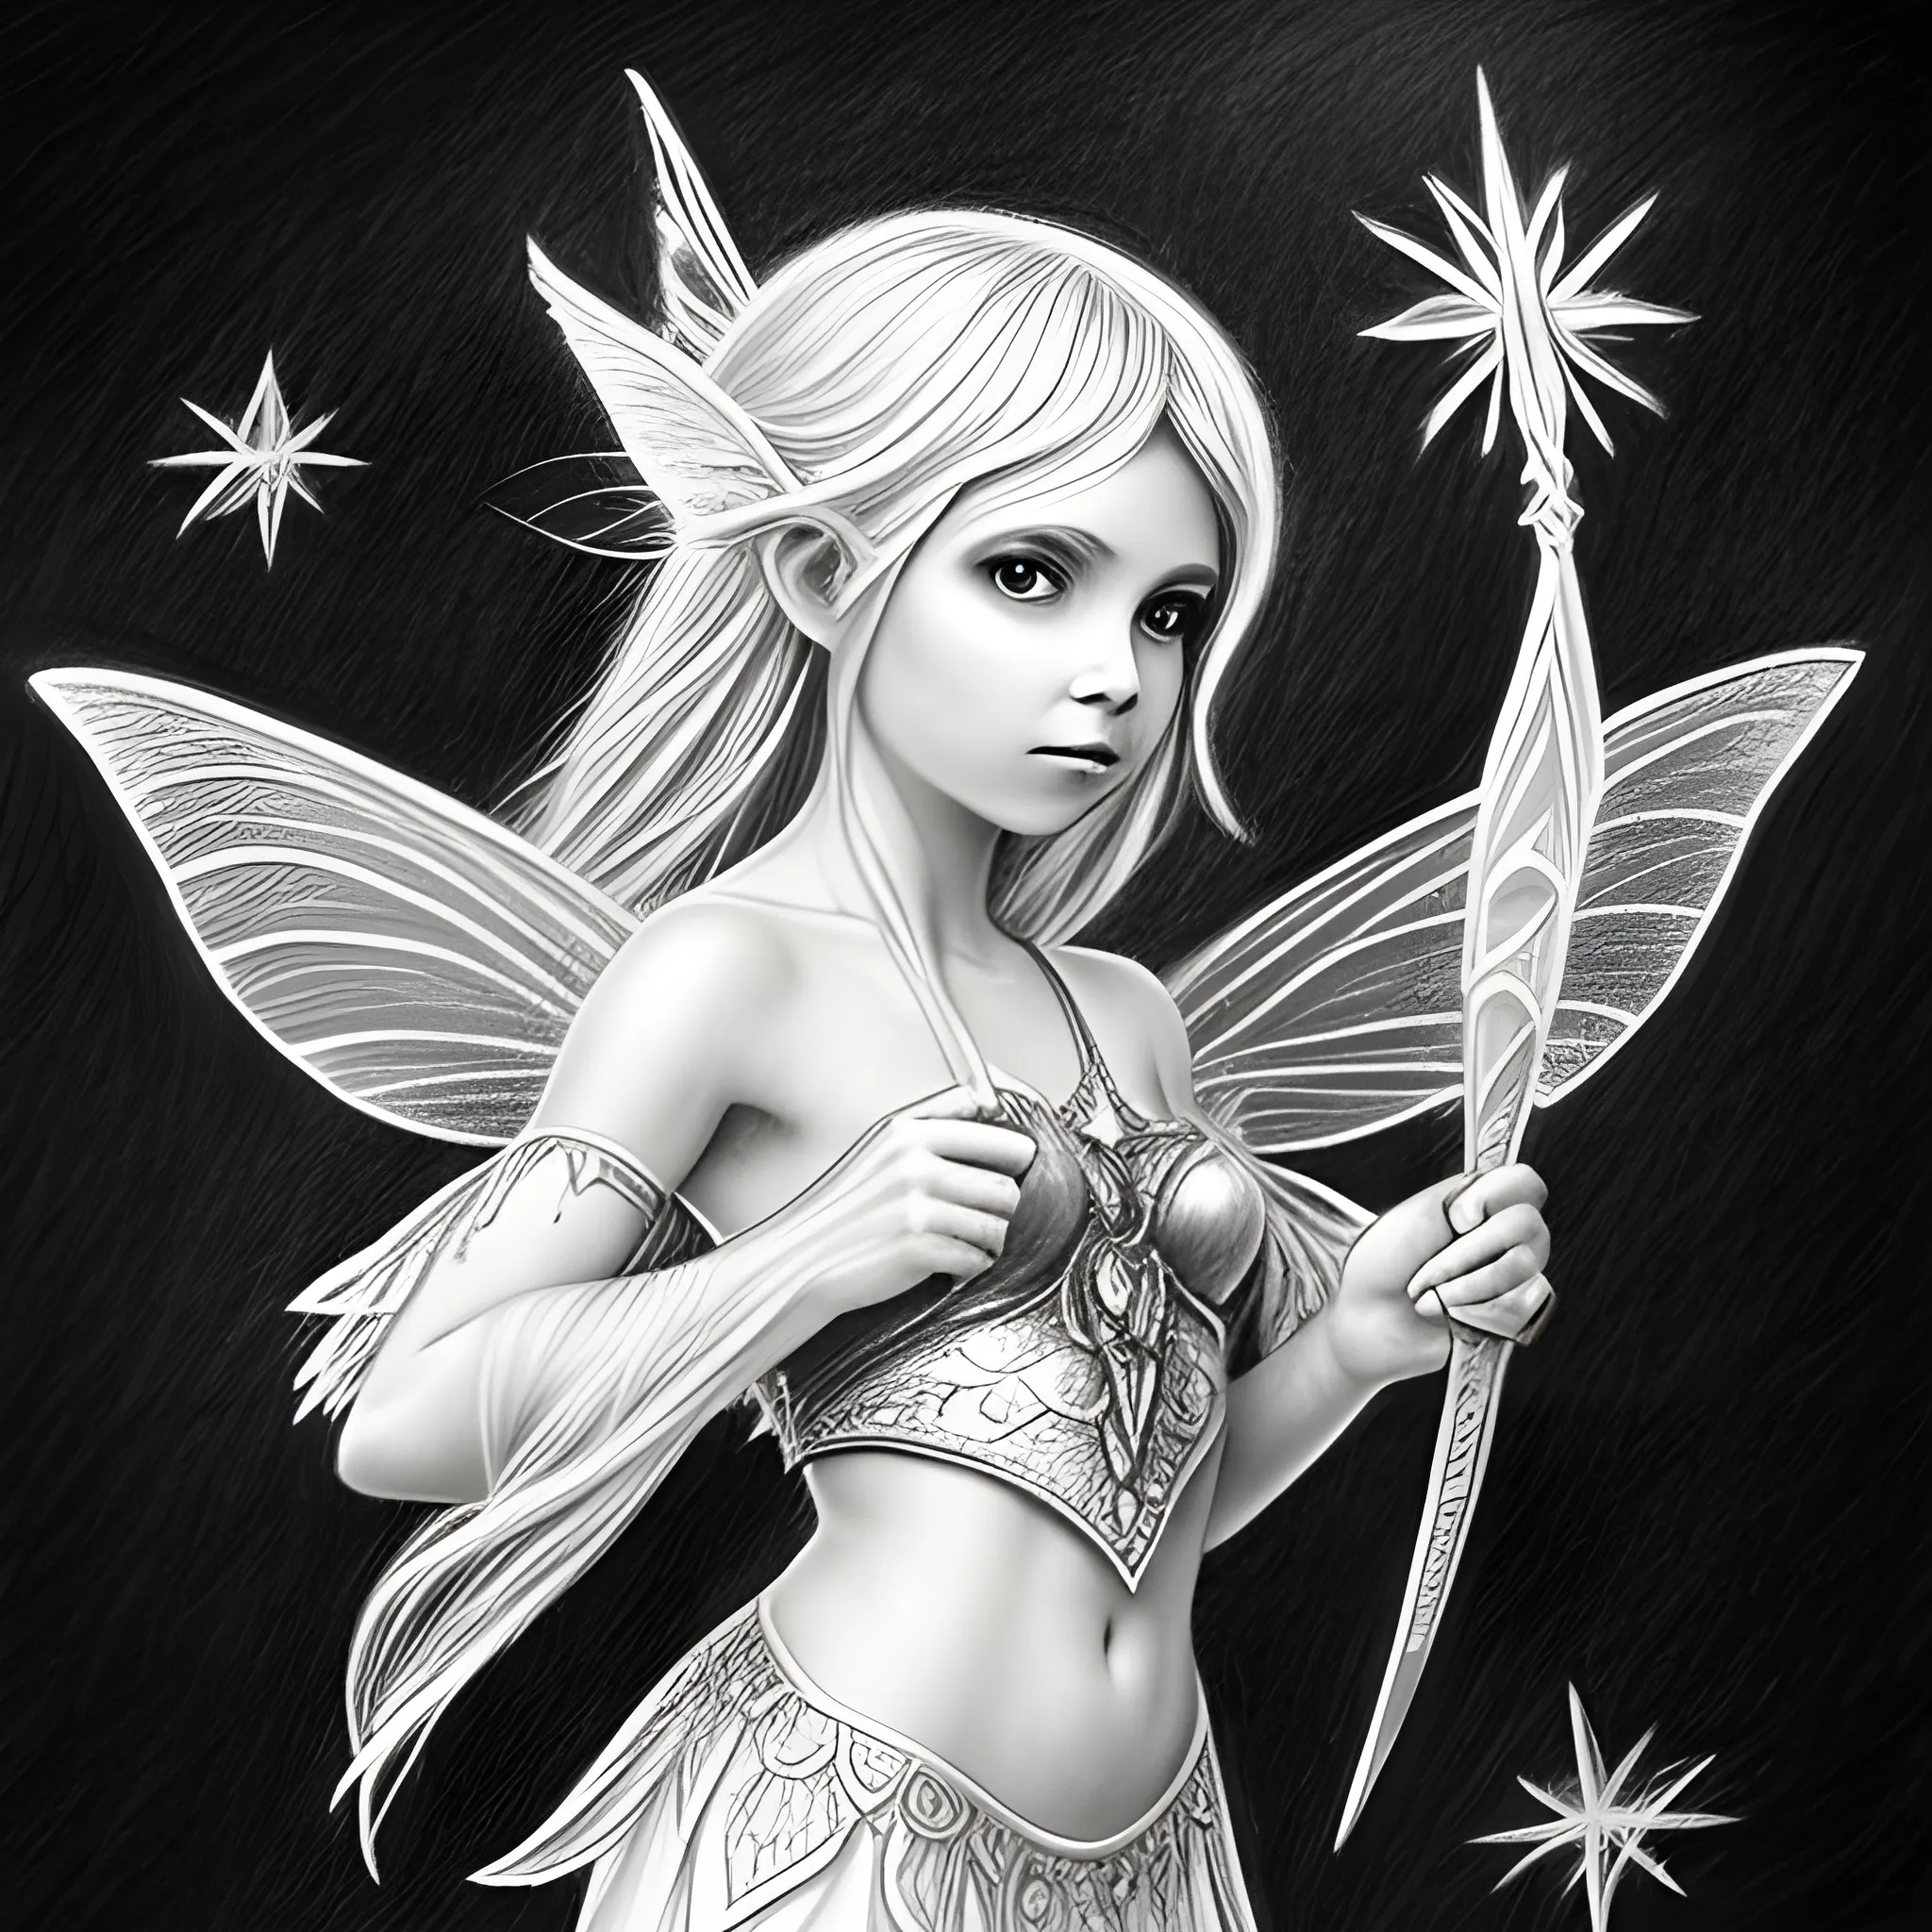 magical fantasy
fairy snook, Pencil Sketch